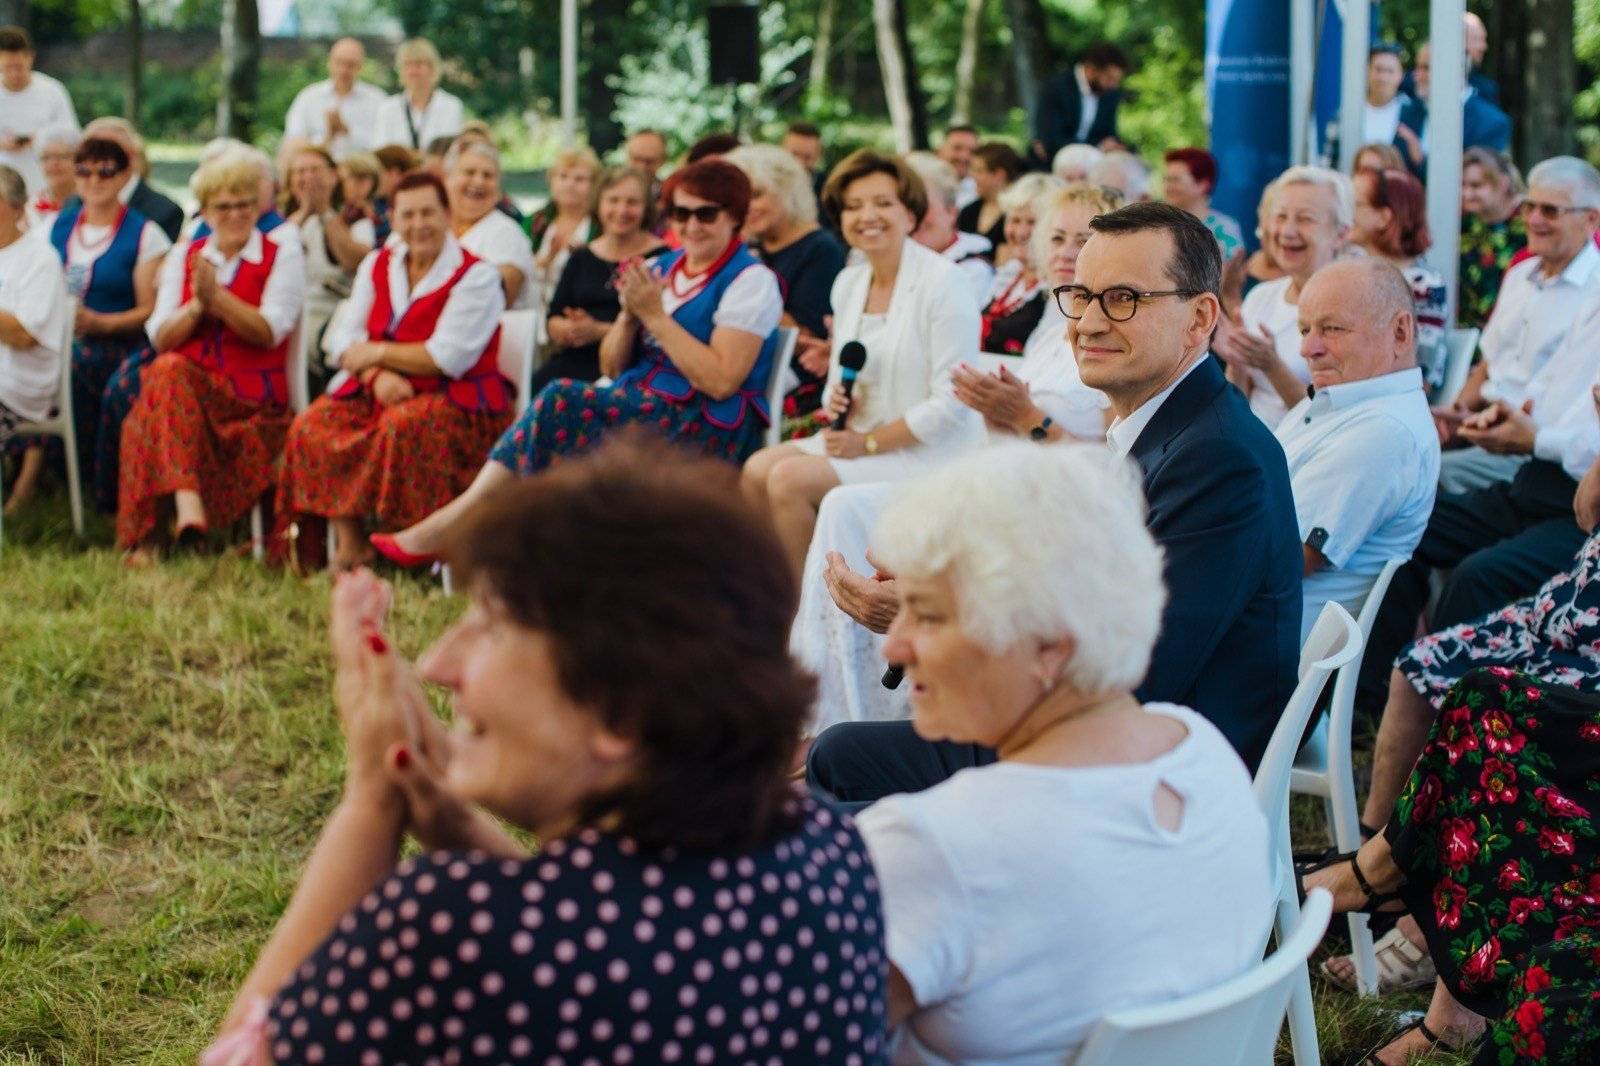 męzczyzna w okularach w średnim wieku (premier Morawiecki) w otoczeniu starszych kobiet siedzących w kręgu na trawie